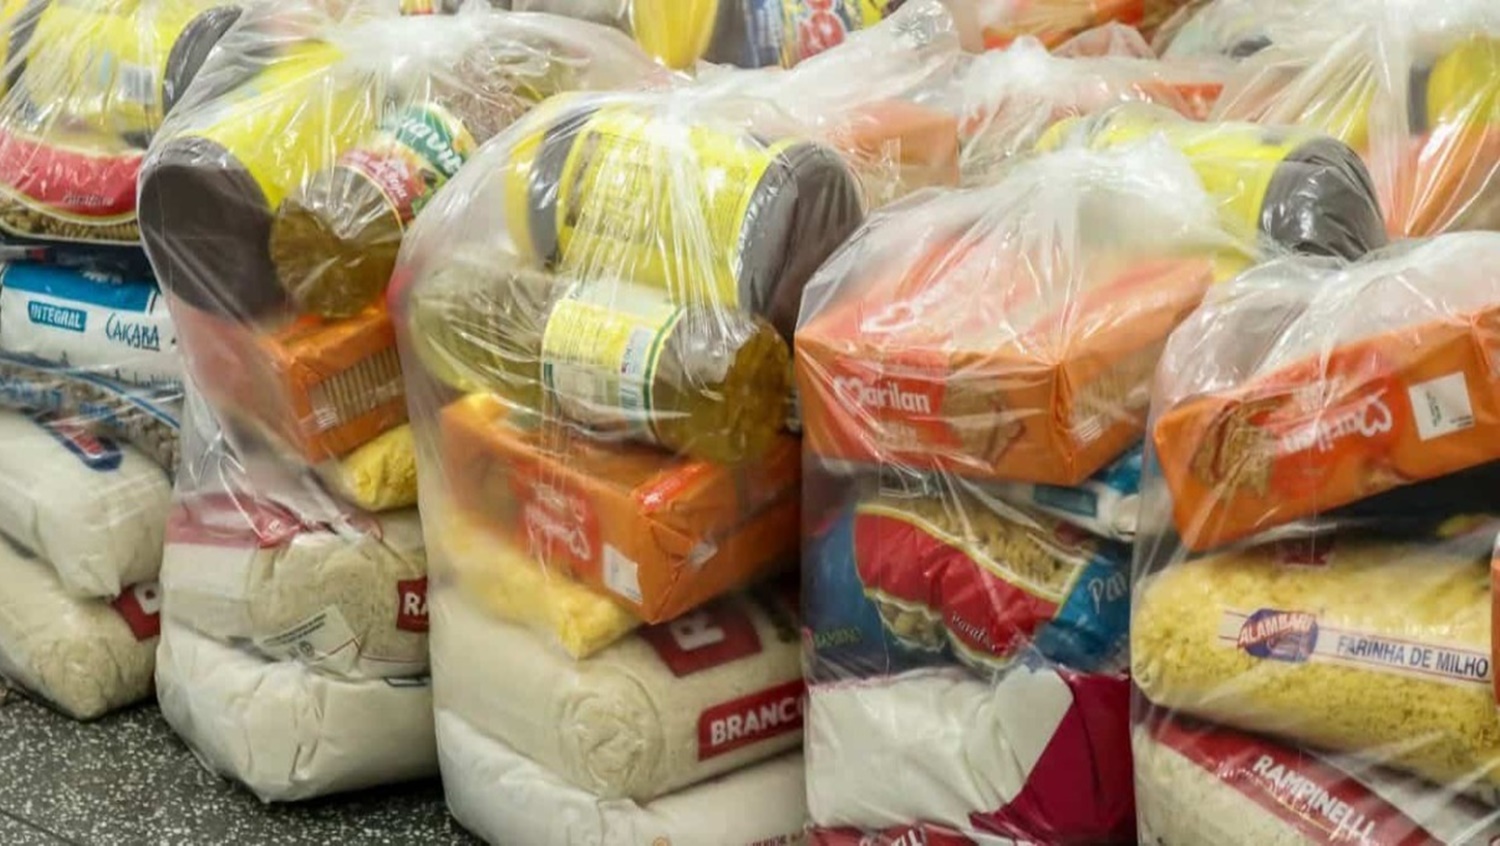 PESO NO BOLSO: Preço da cesta básica sobe novamente em Porto Velho em janeiro